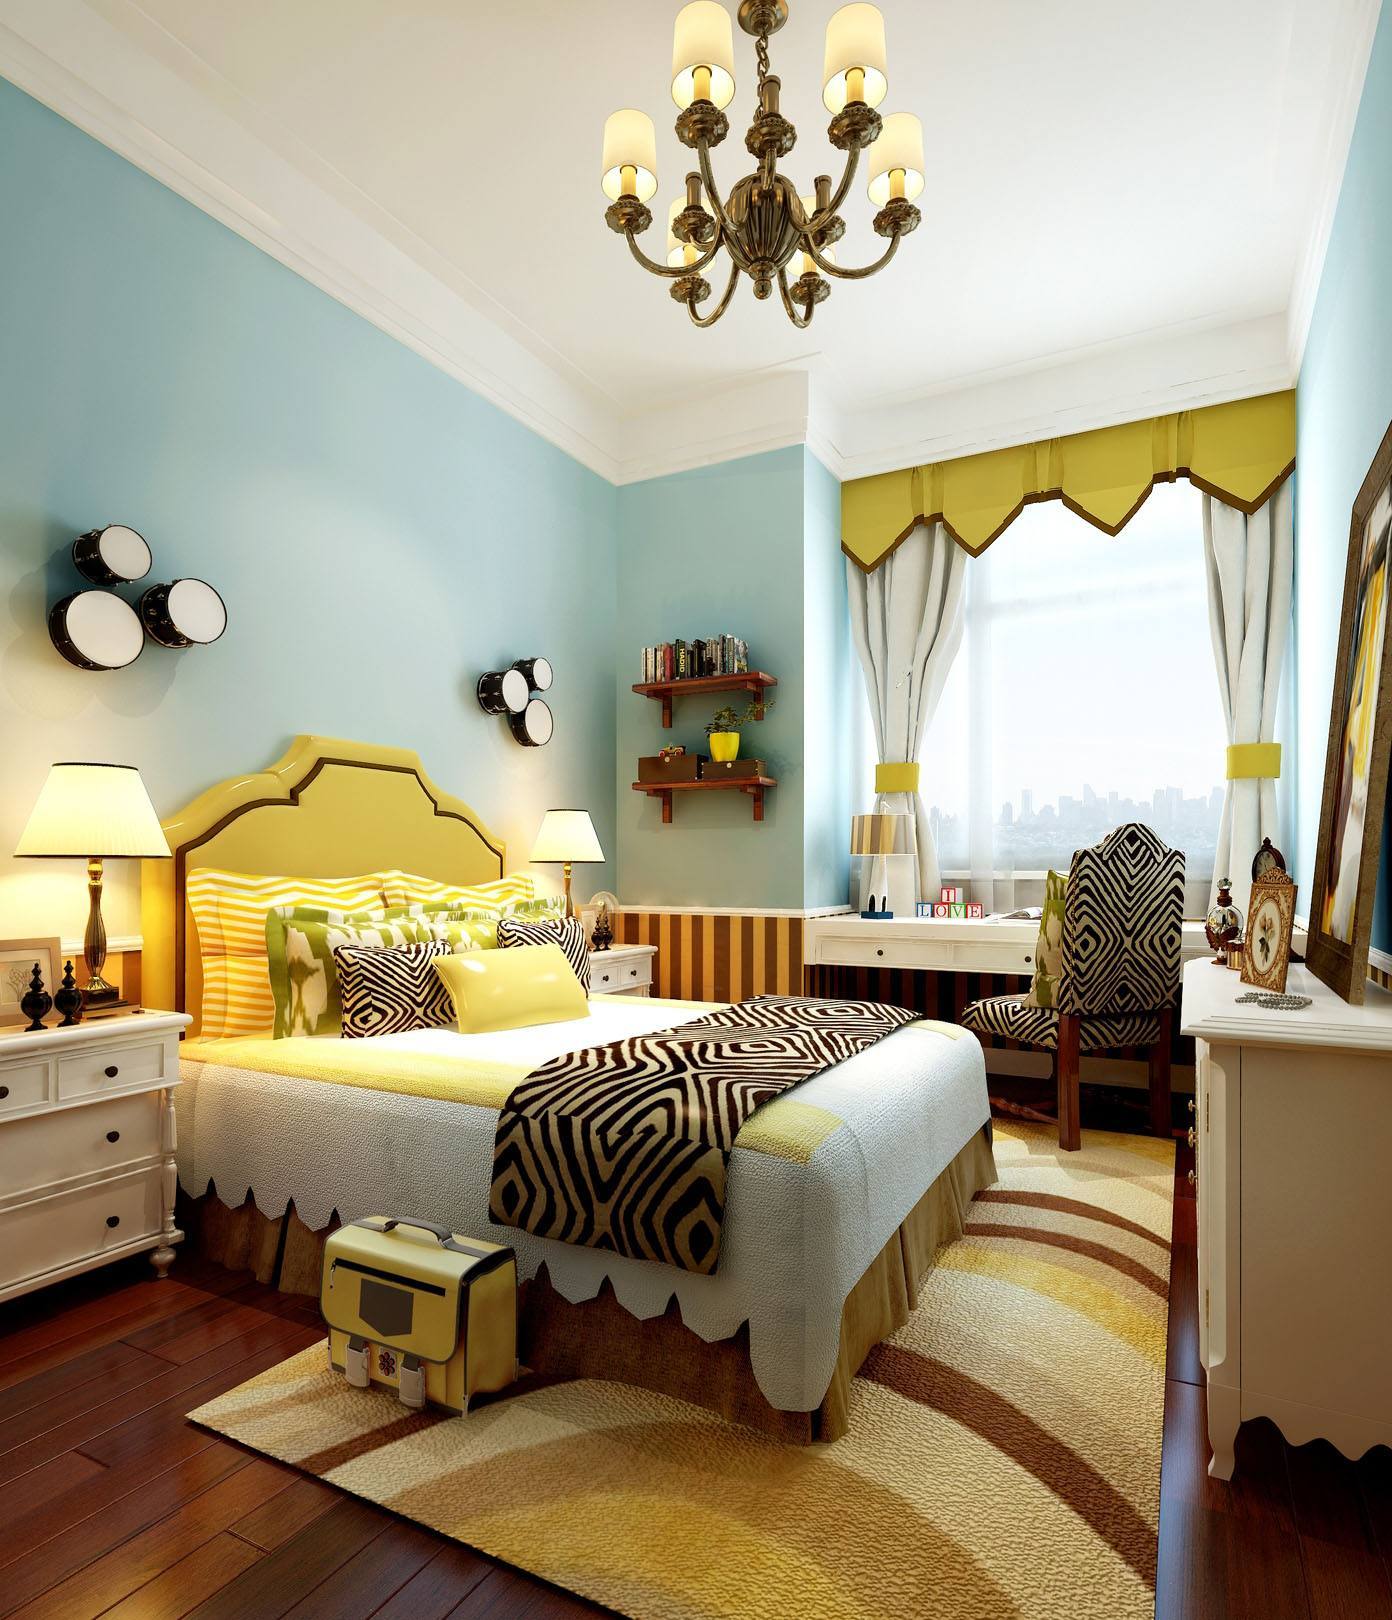 12平米淡蓝色房间现代港式风格装修效果图